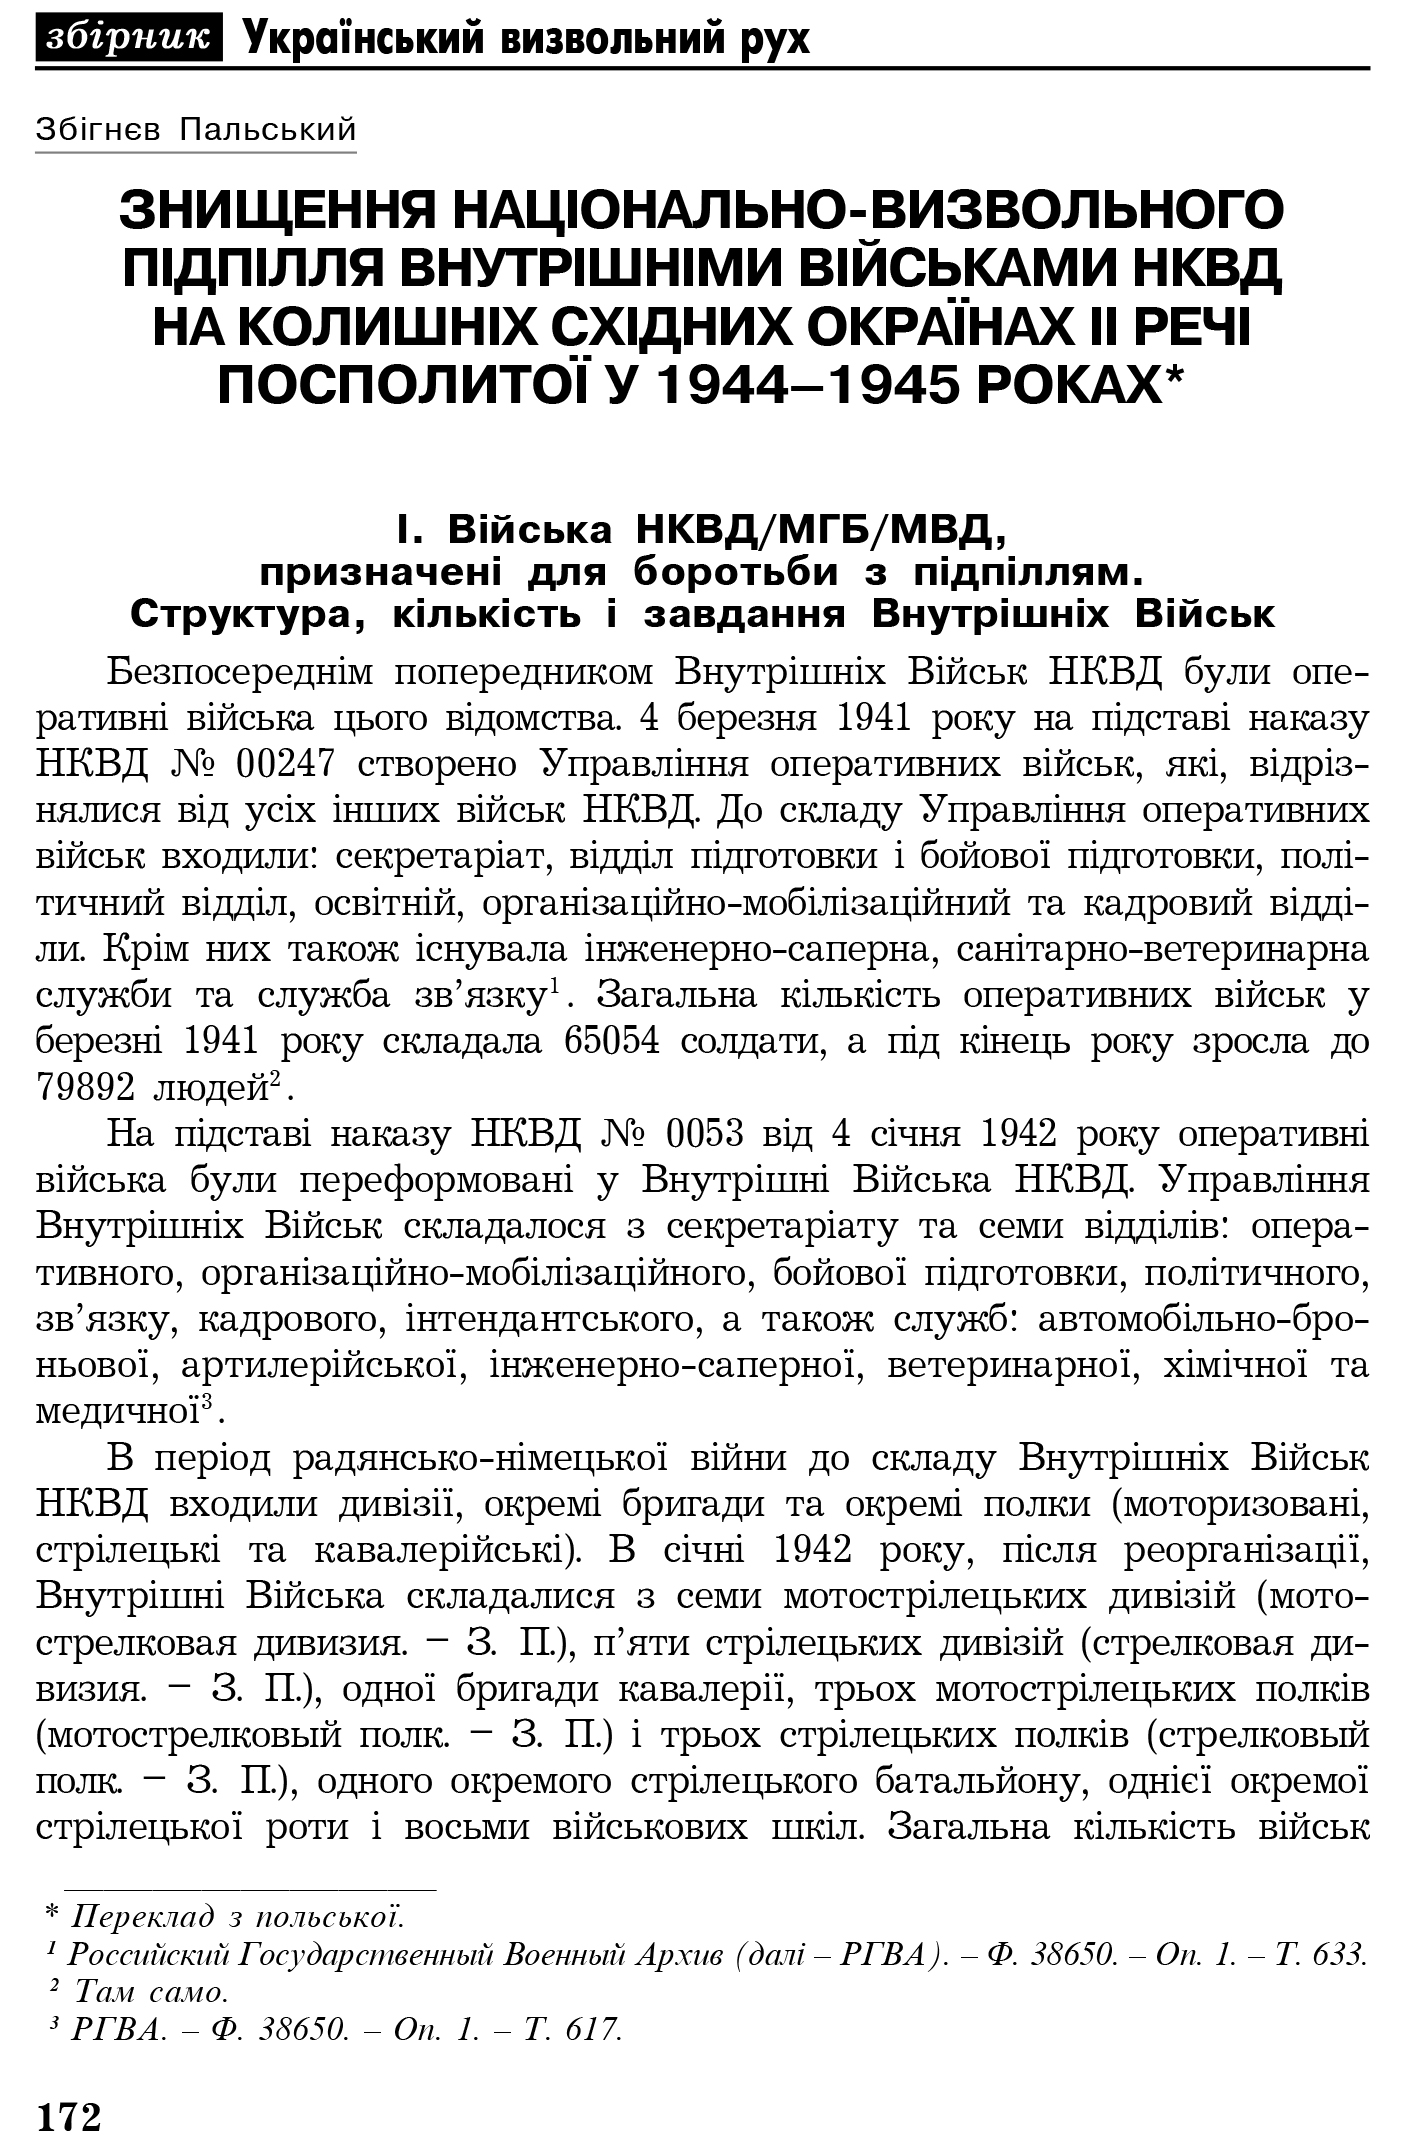 Український визвольний рух №4, ст. 172 - 209